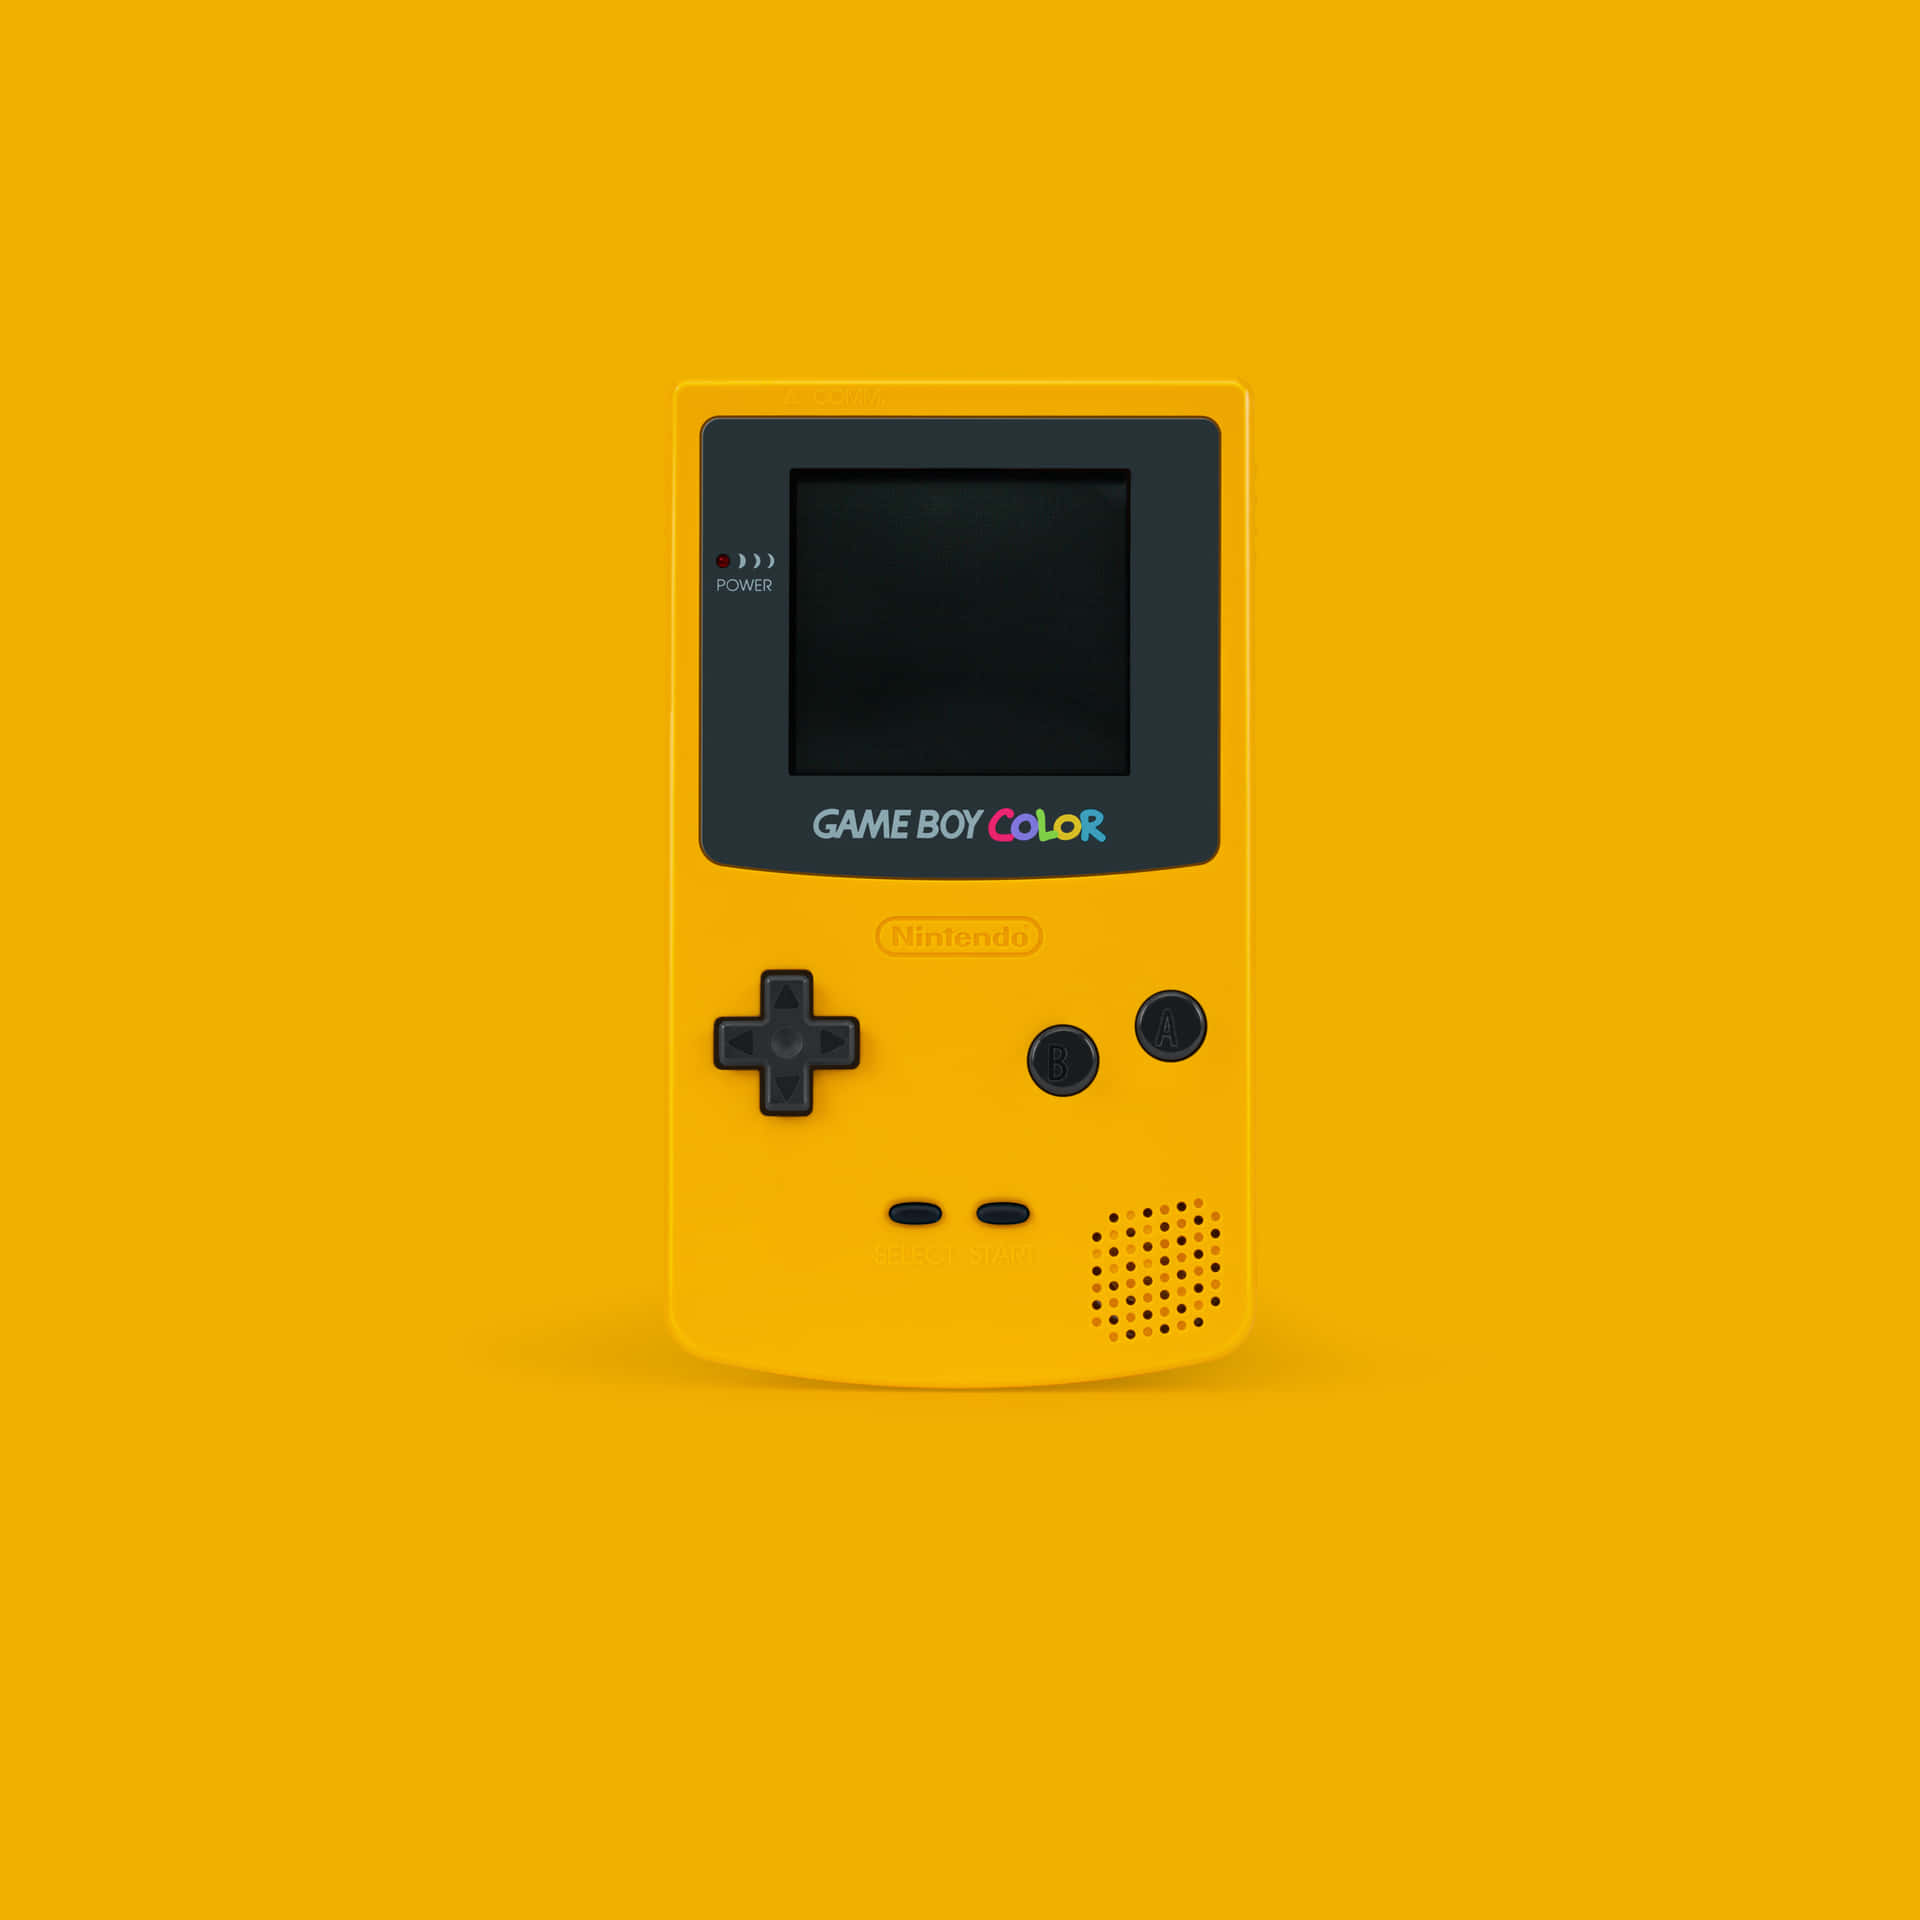 Fundoamarelo Para O Nintendo Game Boy Color.